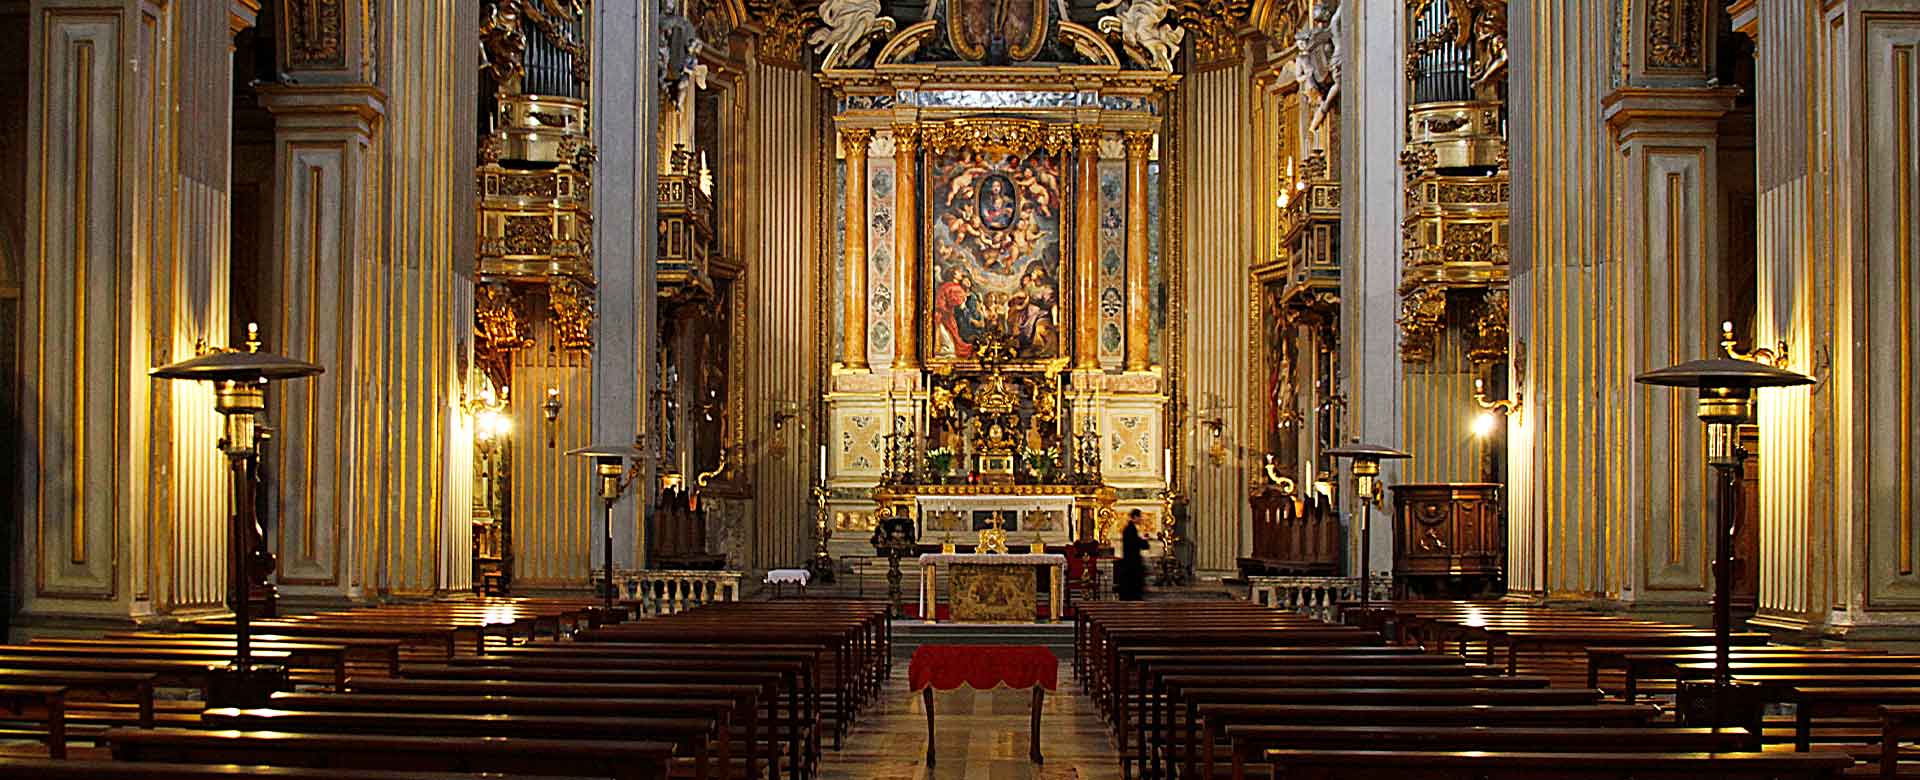 Chiesa di Santa Maria in Vallicella anche detta Chiesa Nuova, Roma